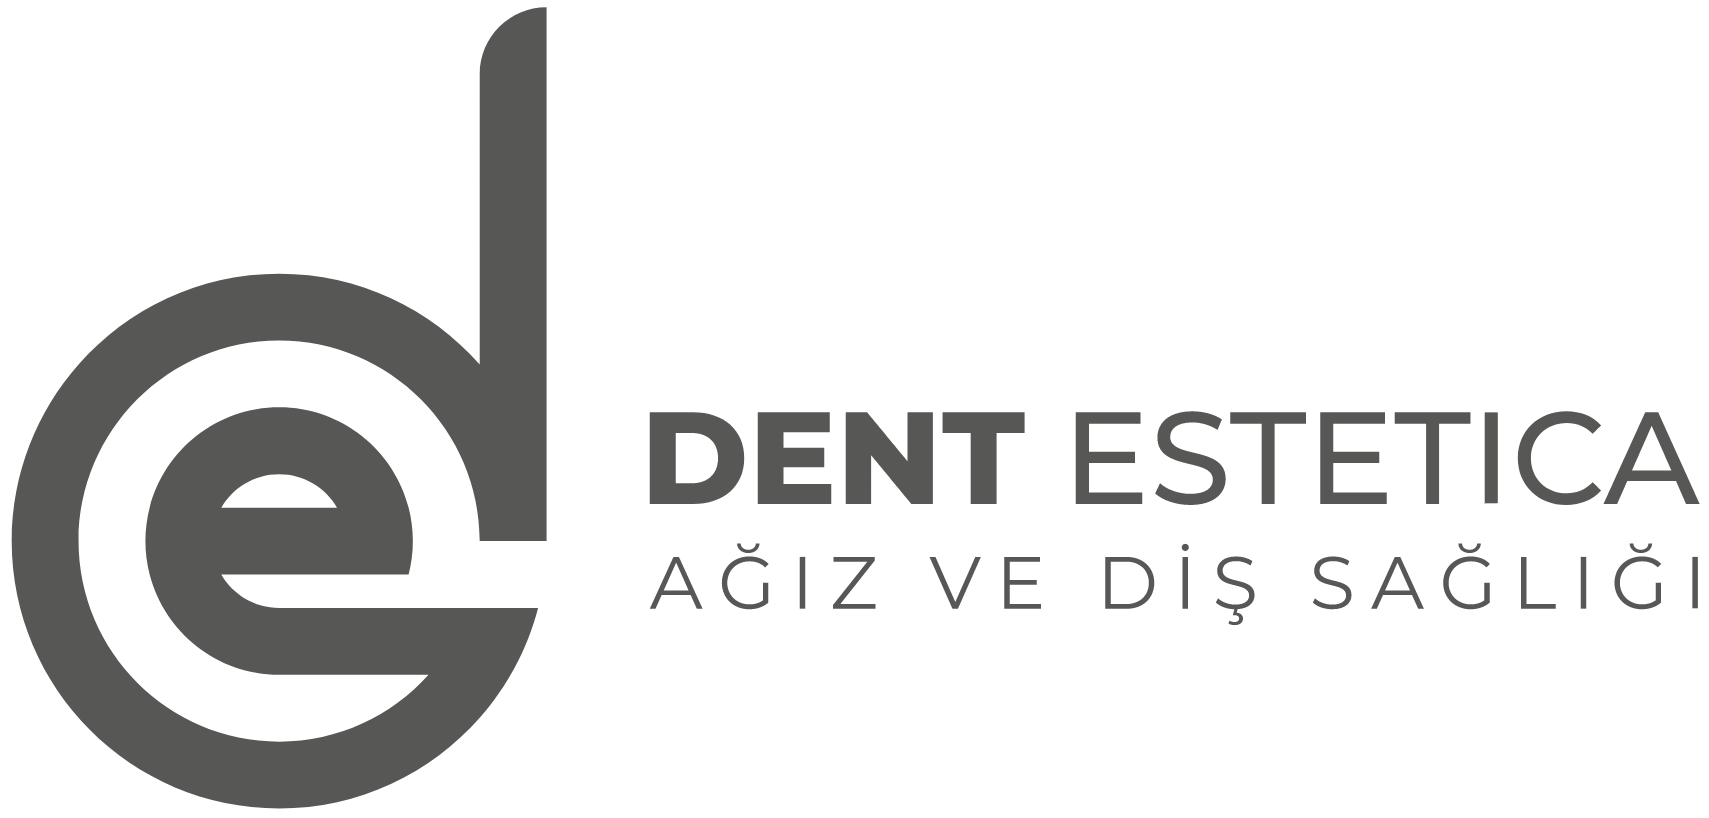 Dent Estetica